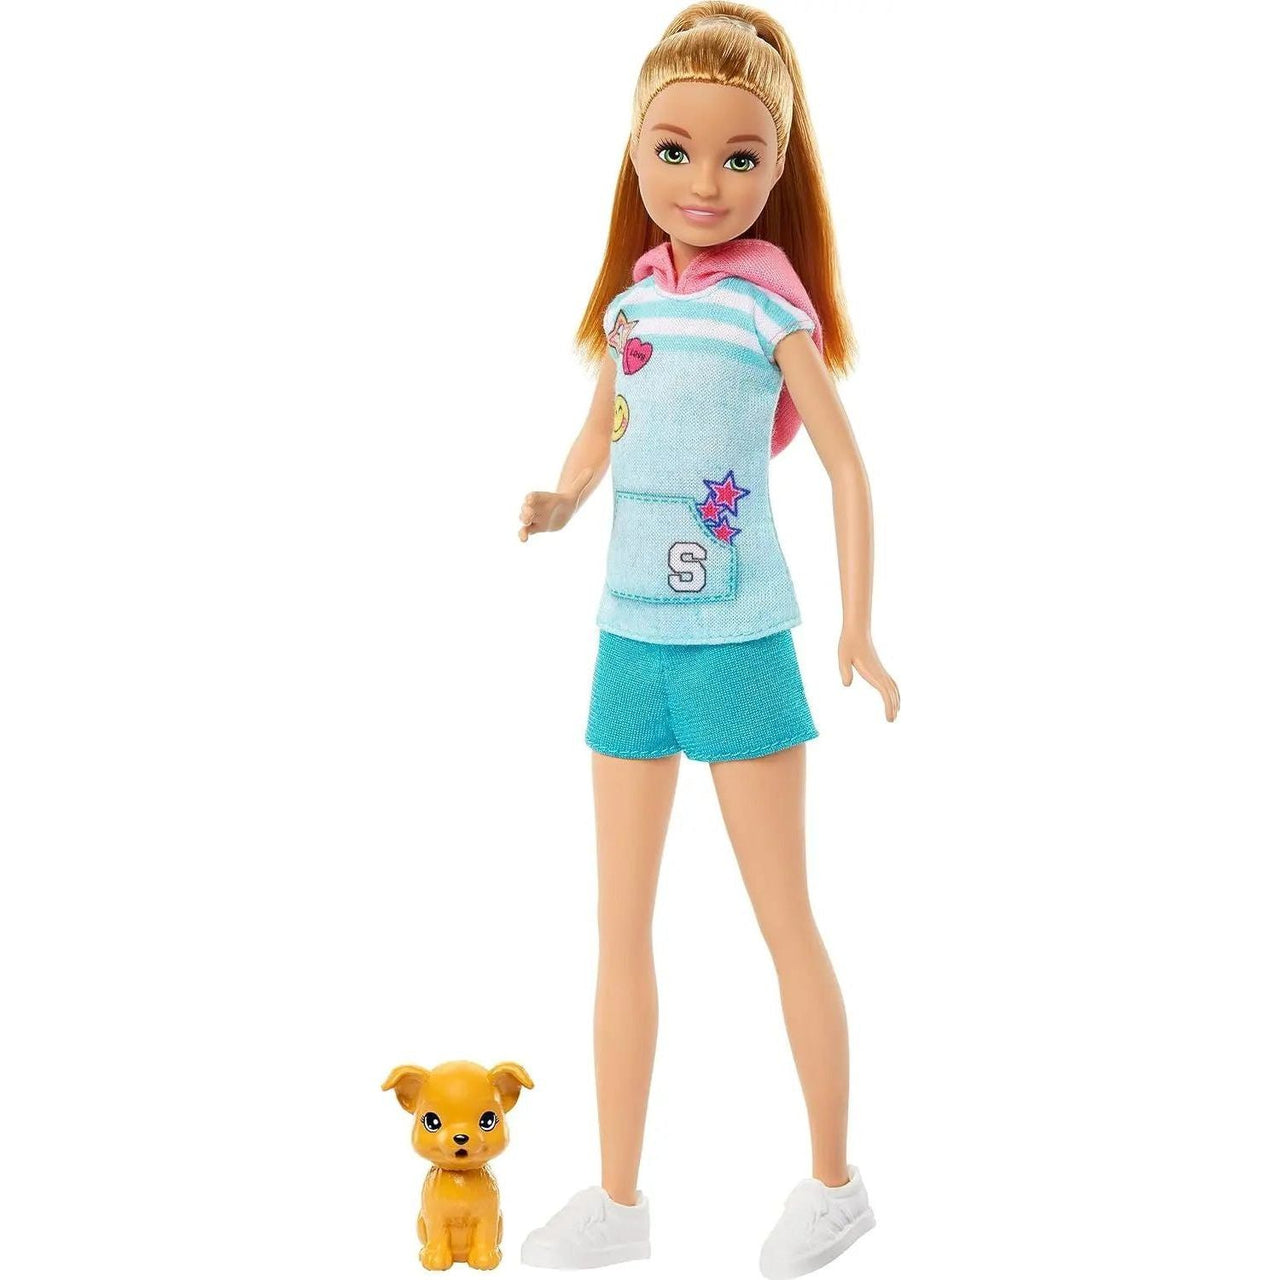 Barbie Stacie to the Rescue Stacie Doll & Puppy Barbie